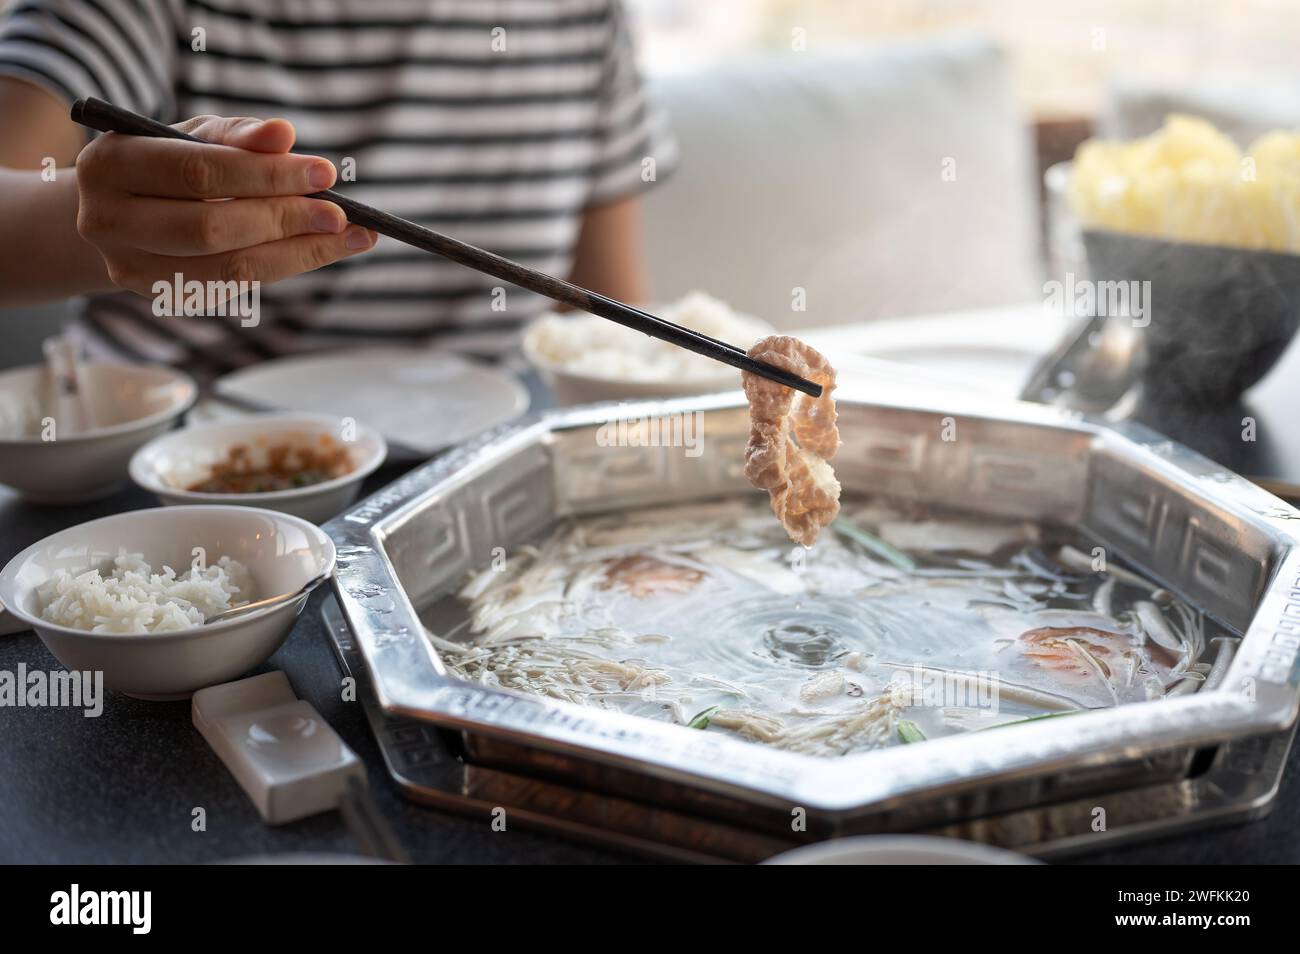 Eine Frau taucht rohes Fleisch, um in einer heißen, kochenden Suppe zu kochen. Dieses traditionelle asiatische Gericht wird mit vielen Zutaten und Fleisch zubereitet Stockfoto